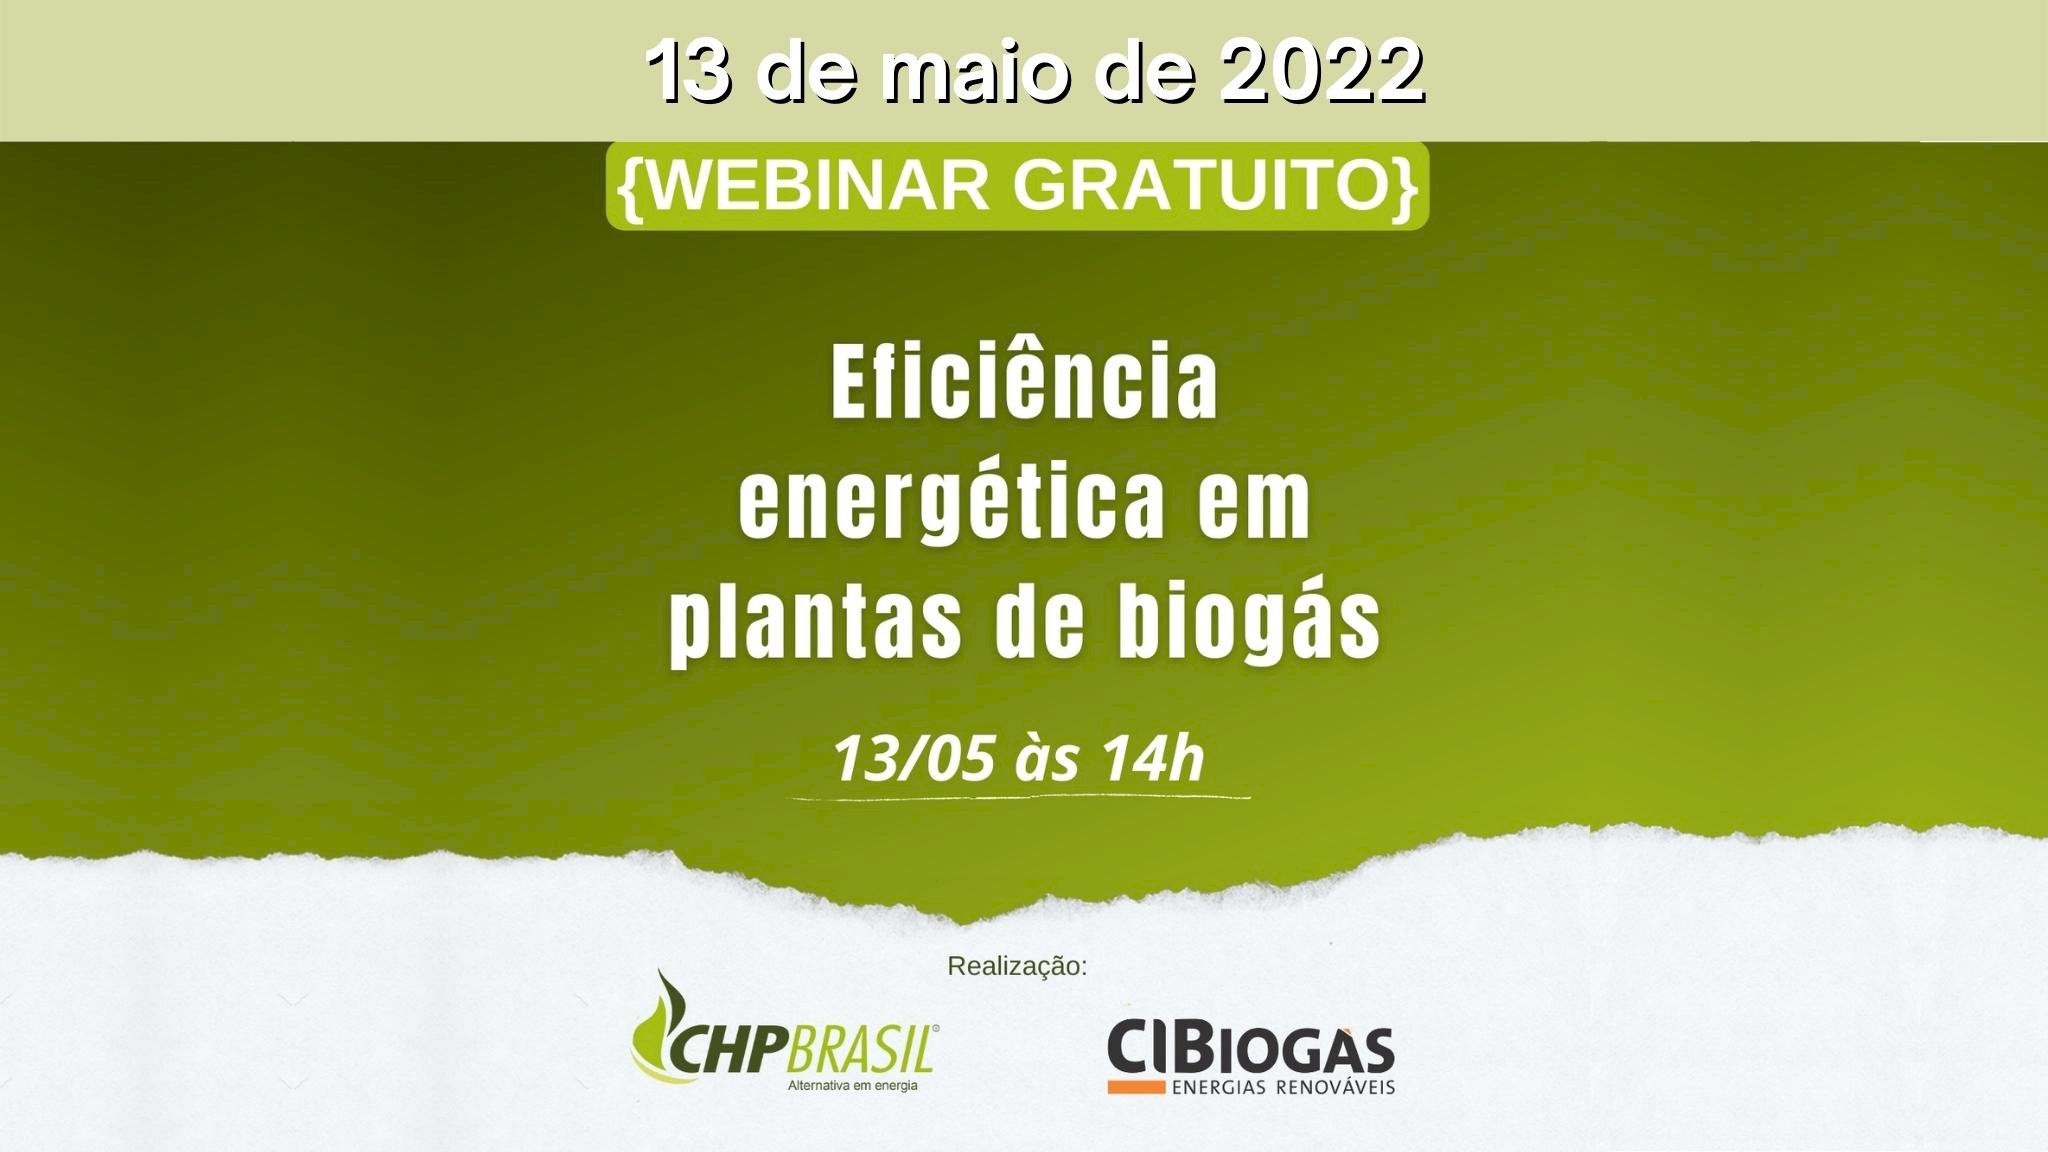 Webinar "Eficiência energética em plantas de biogás"